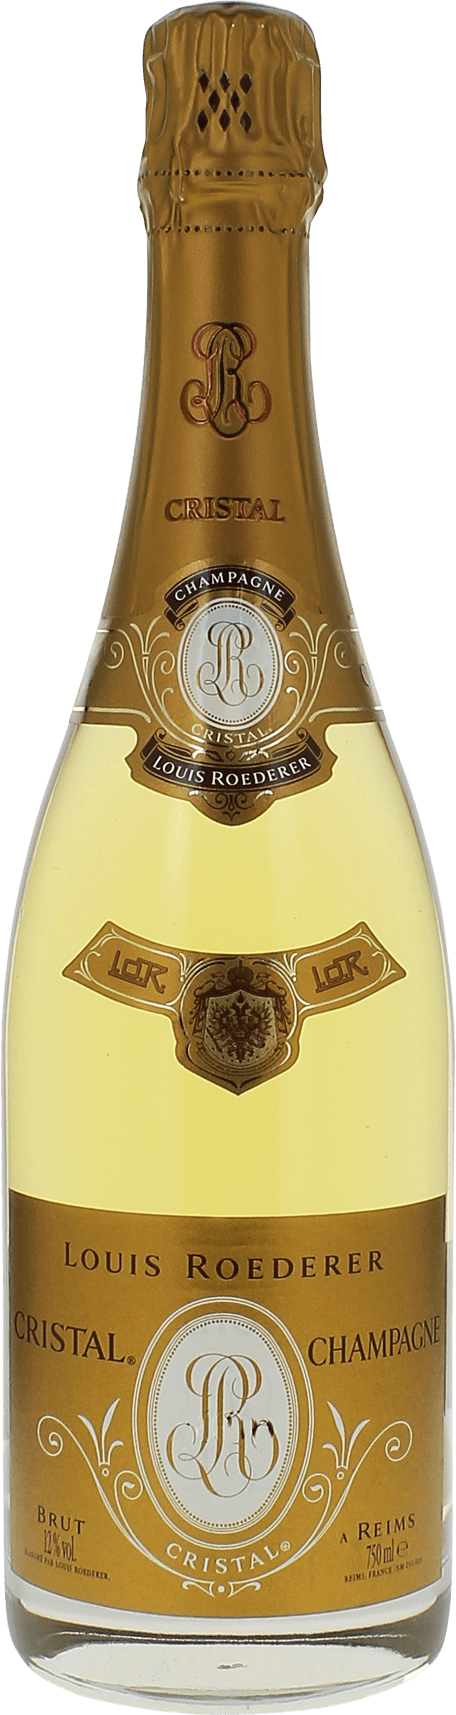 Cristal roederer 1999  Roederer, Champagne